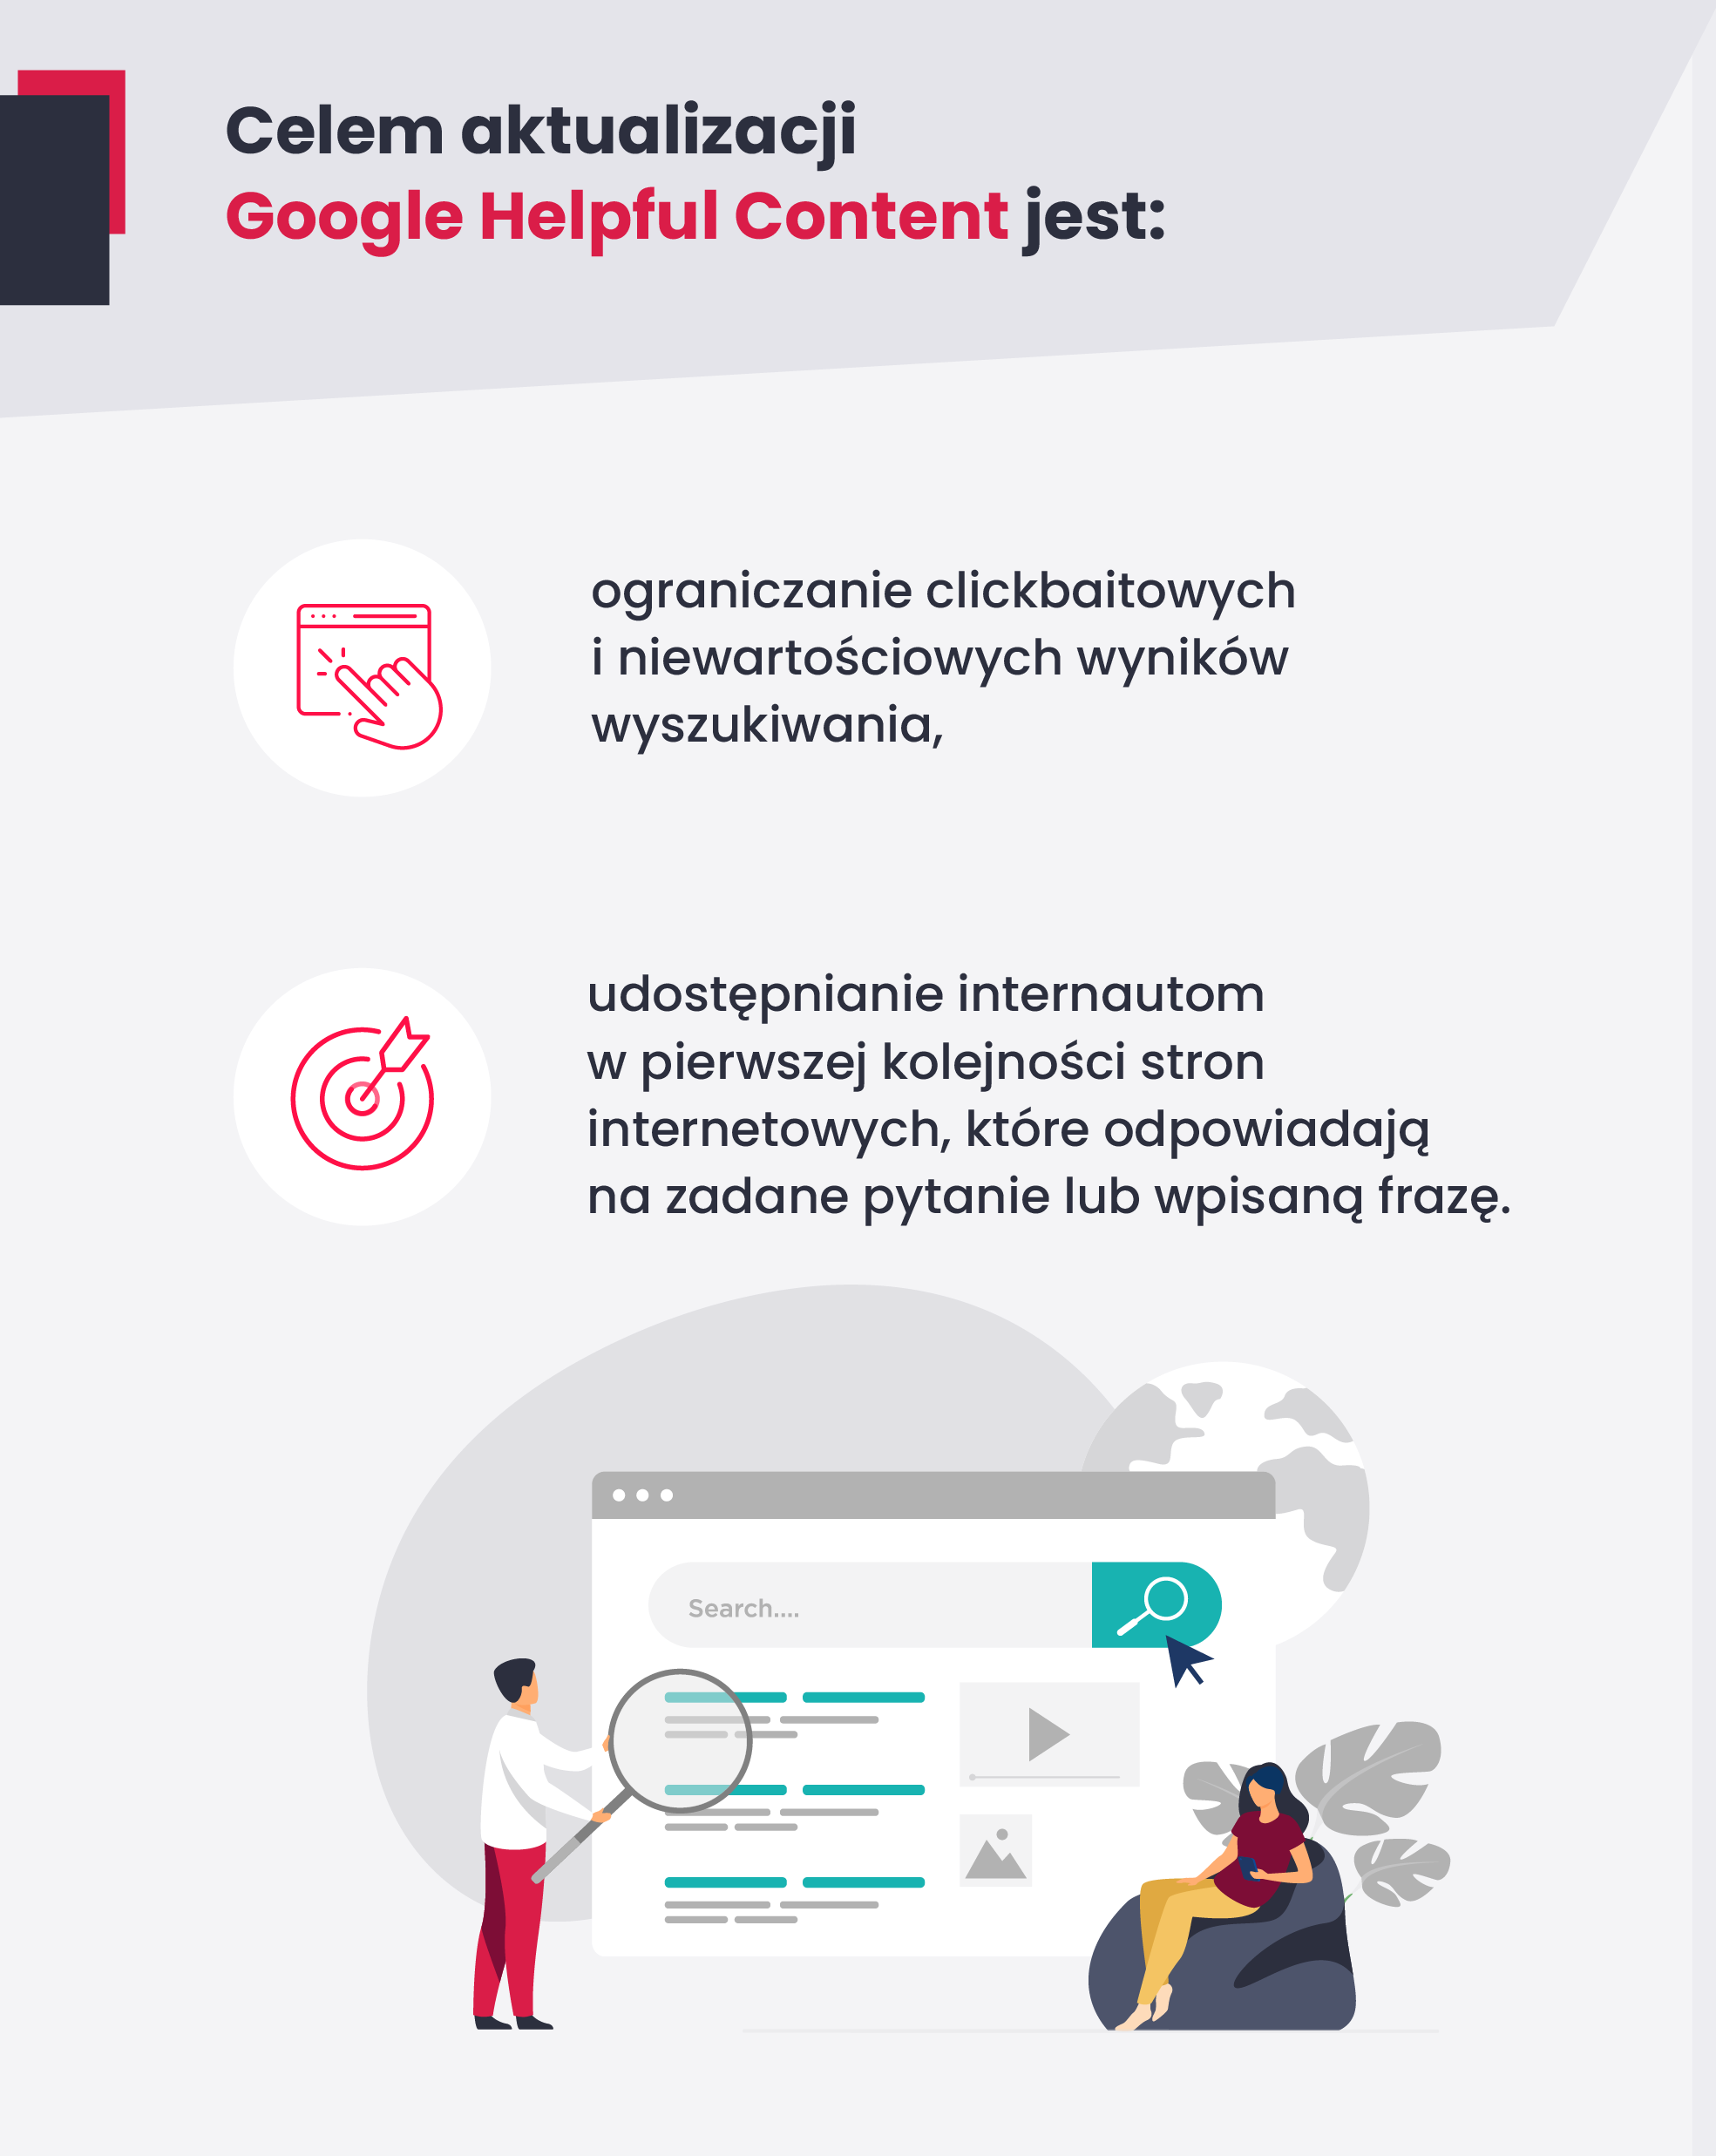 Główne cele aktualizacji Google helpful Content przedstawione w formie graficznej